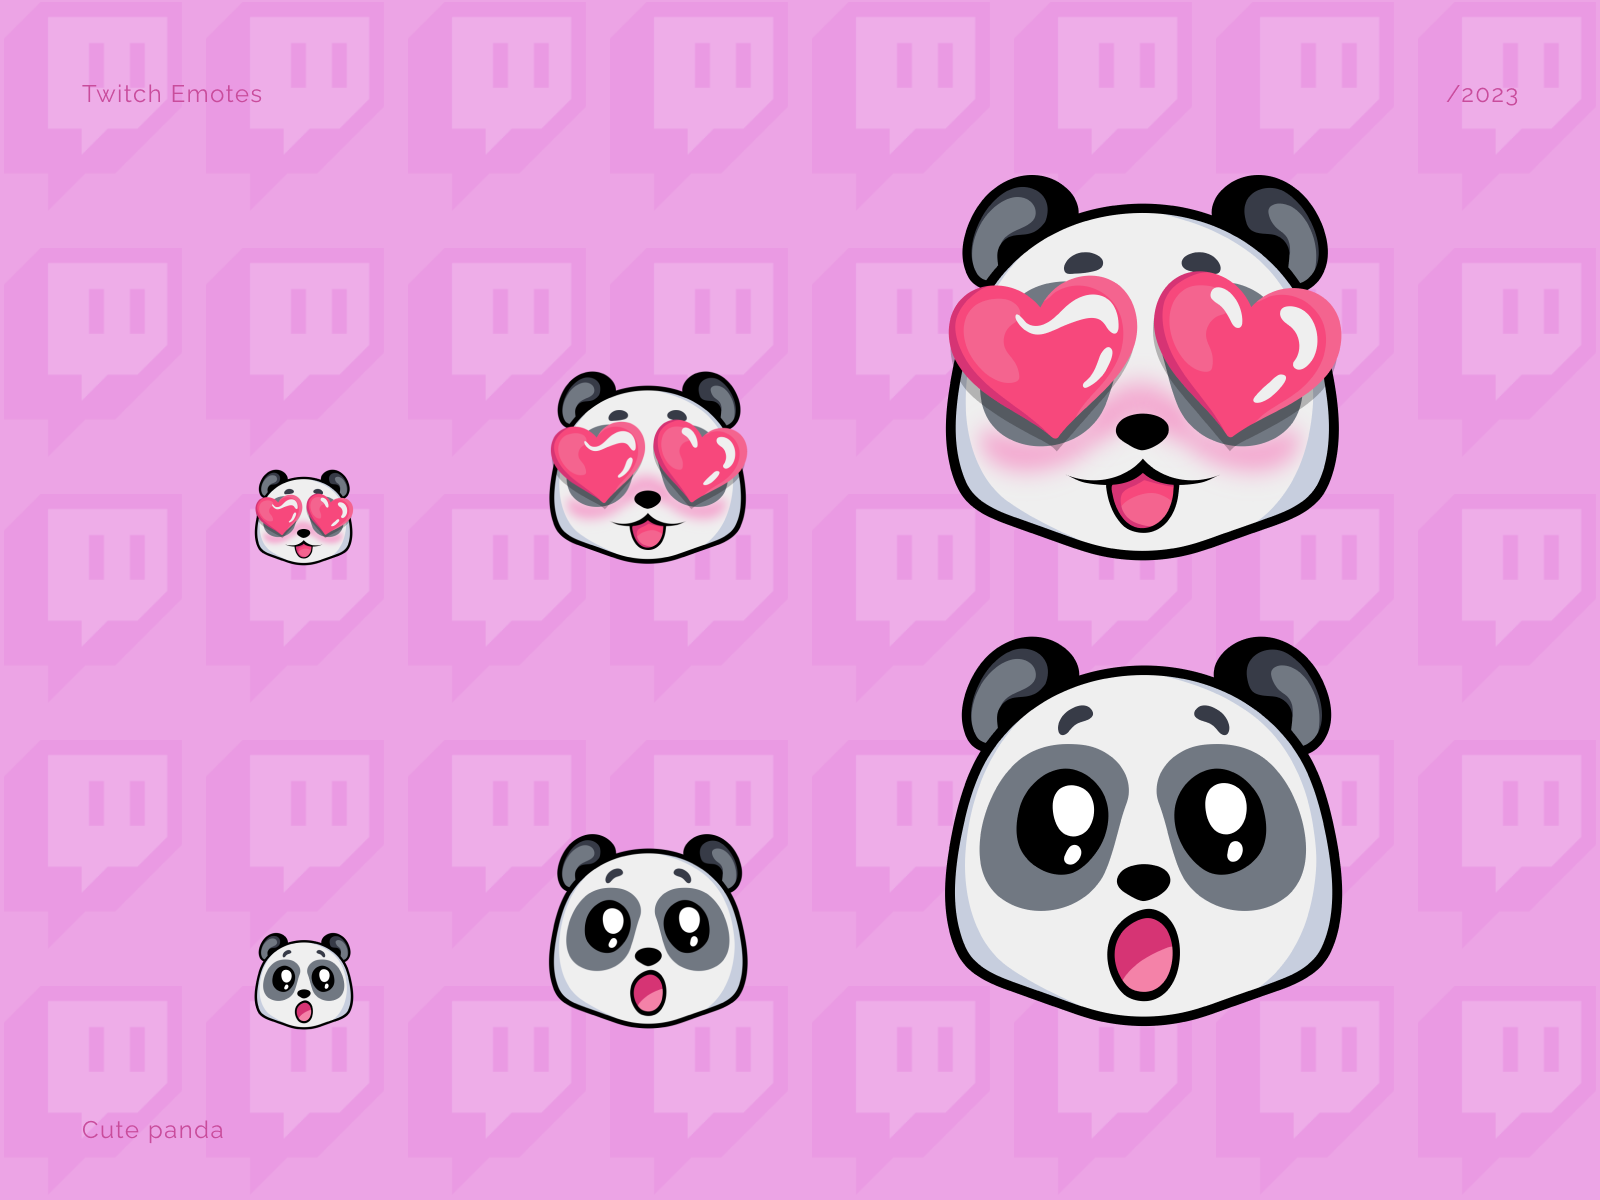 Twitch emotes panda cute emotes illustration panda stream twitch twitch emotes панда смайлики для твича твич